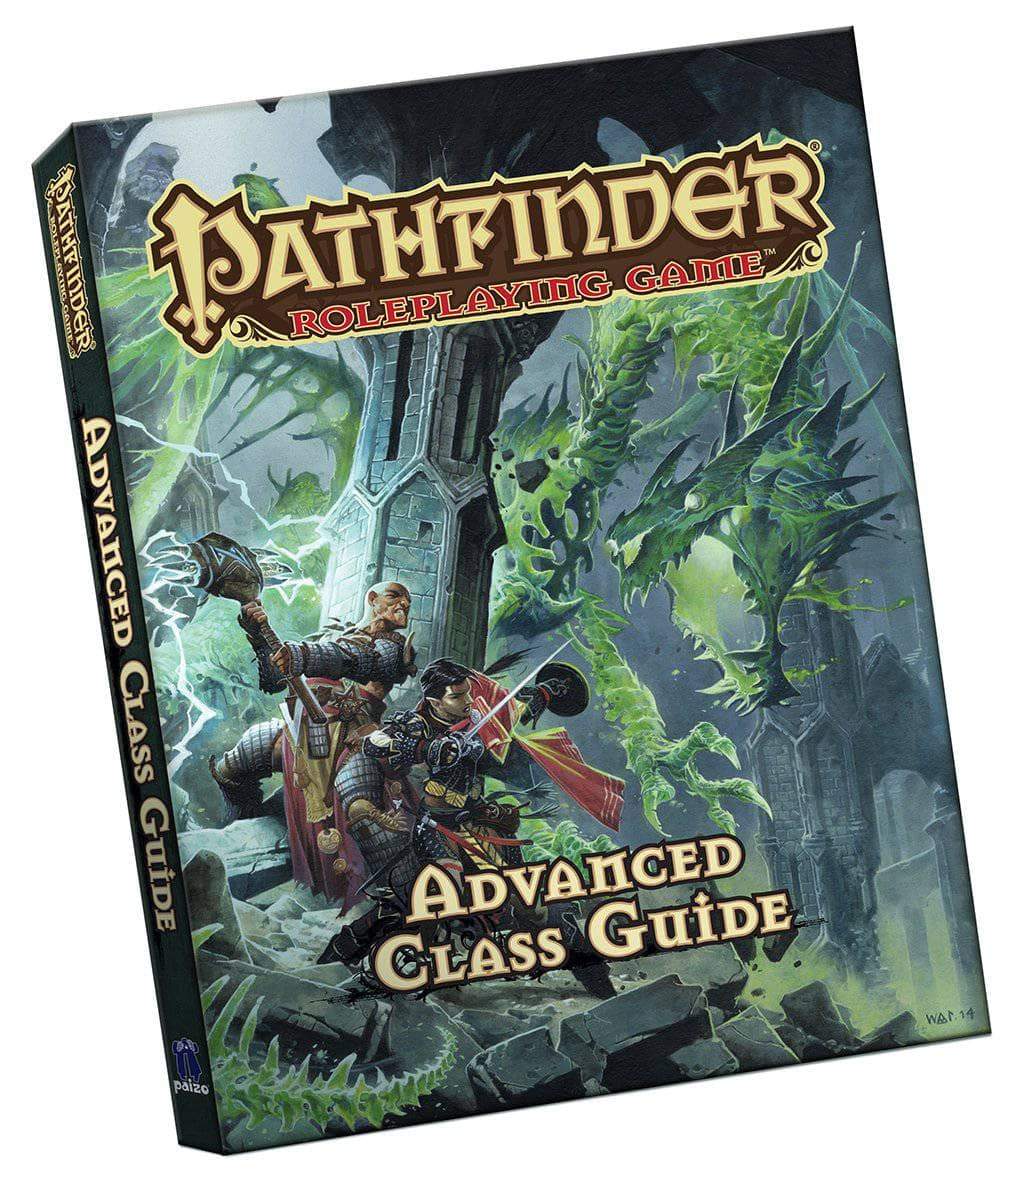 Pathfinder: Roleplaying Game: Advanced Class Guide Pocket verzió (kiskereskedelmi kiadás)